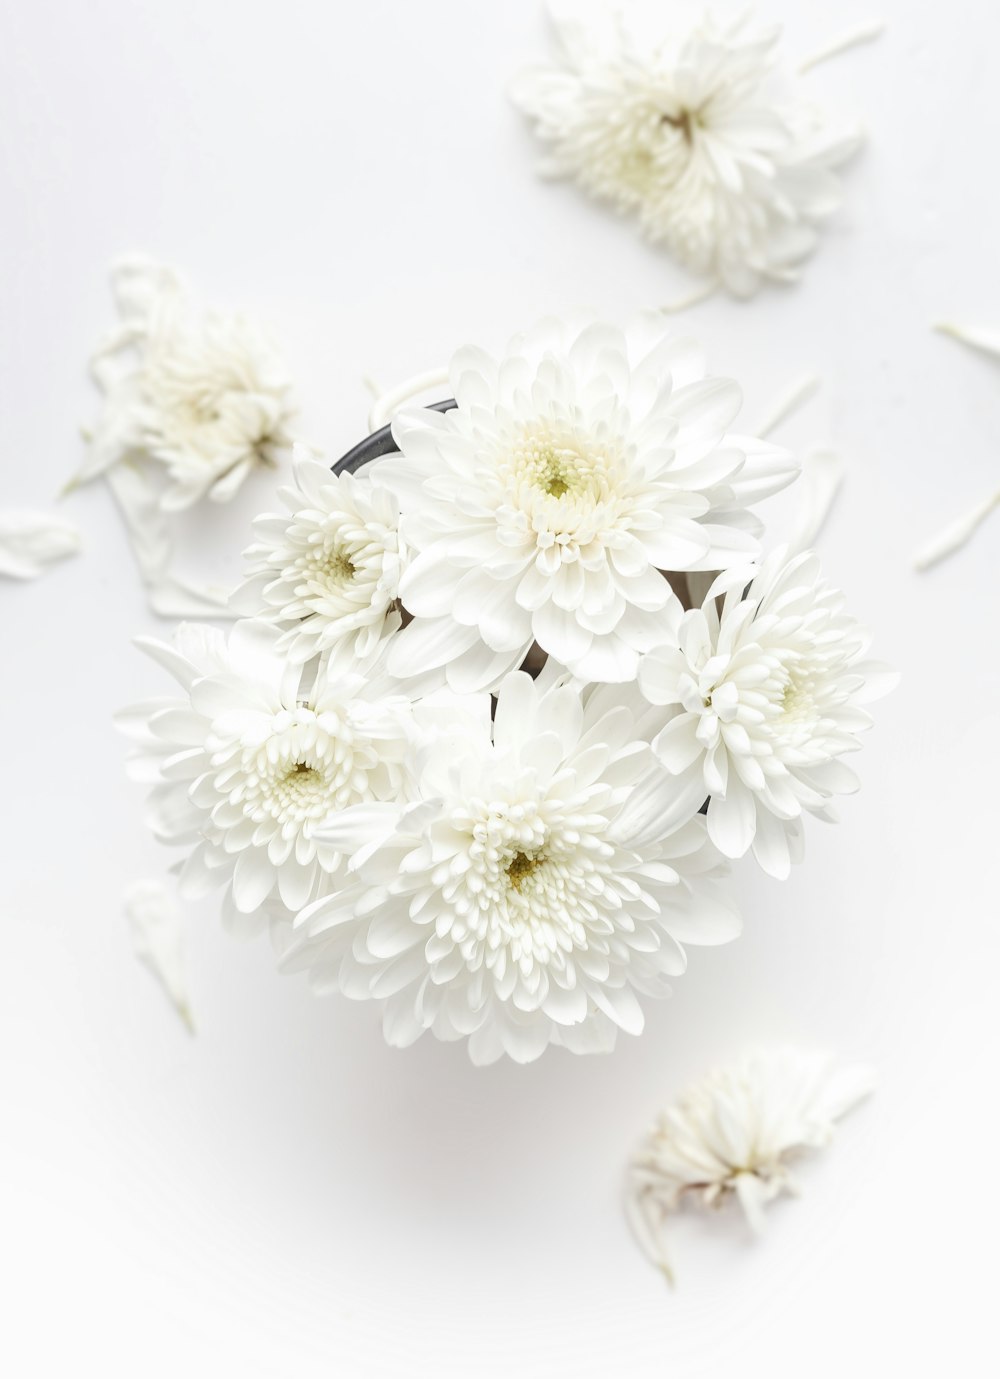 white petaled flower on white background